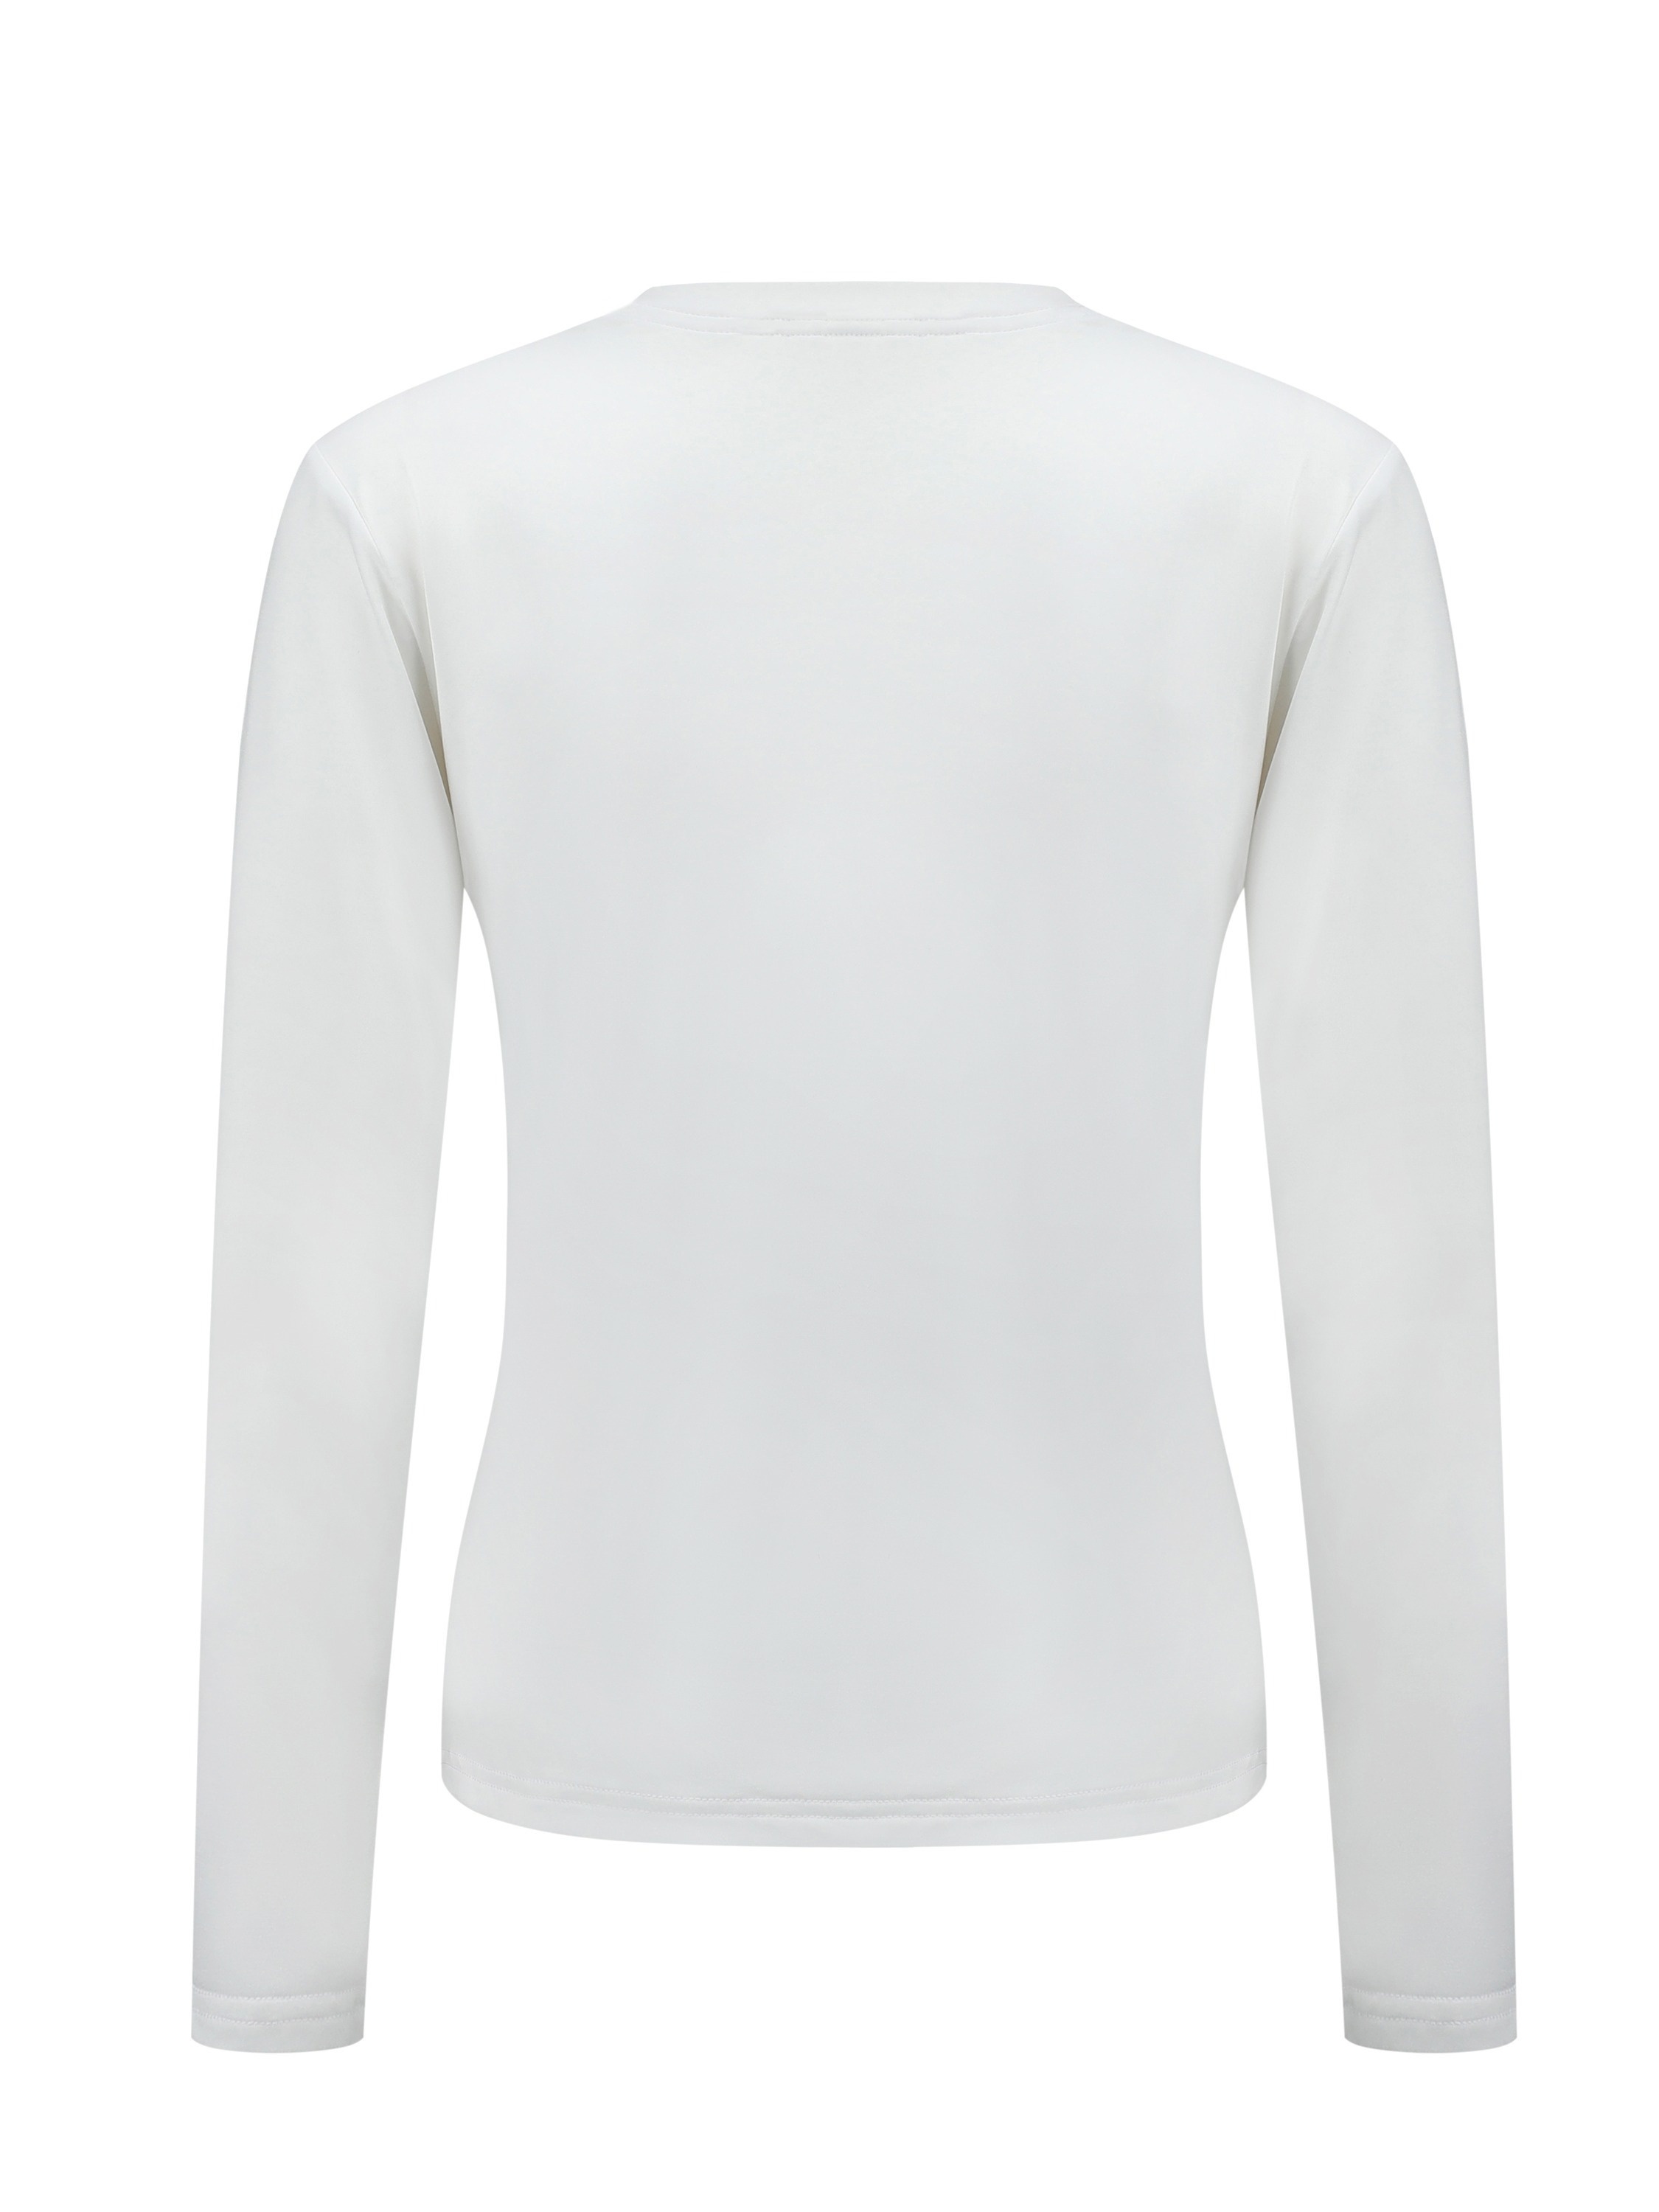 Camiseta térmica para mujer, para clima frío, ajustada, de manga larga,  cuello redondo, camiseta básica térmica para mujer